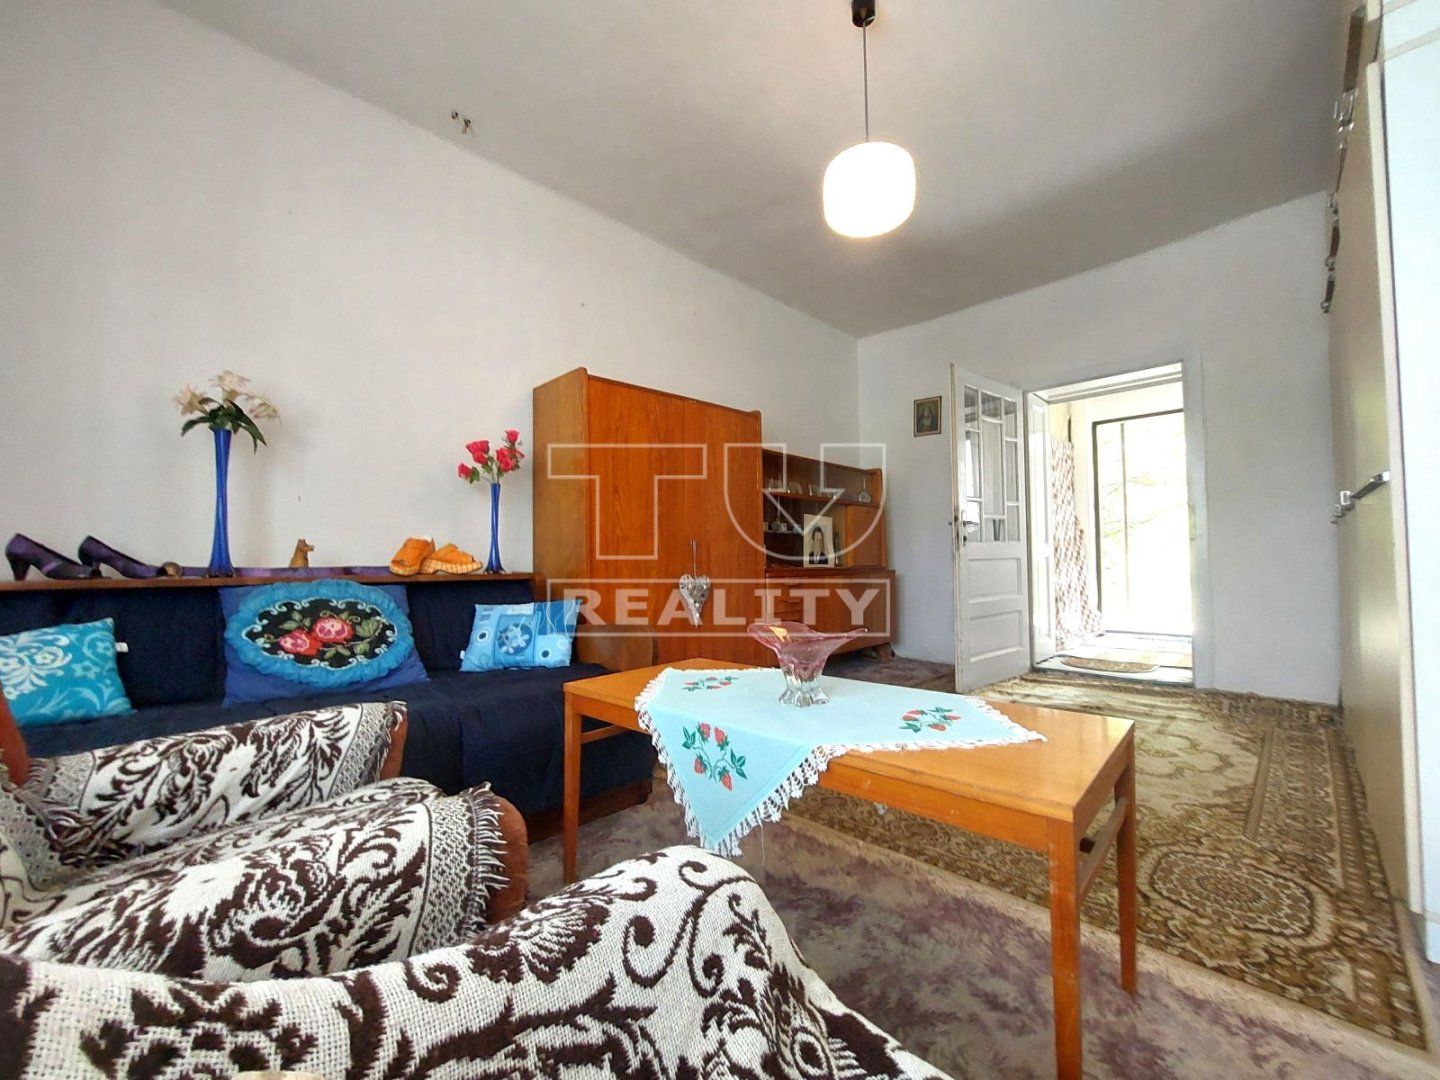 Nová cena!!!Na predaj starší rodinný dom v Nitrianskej Blatnici, postavený na krásnom slnečnom pozemku 2000 m2